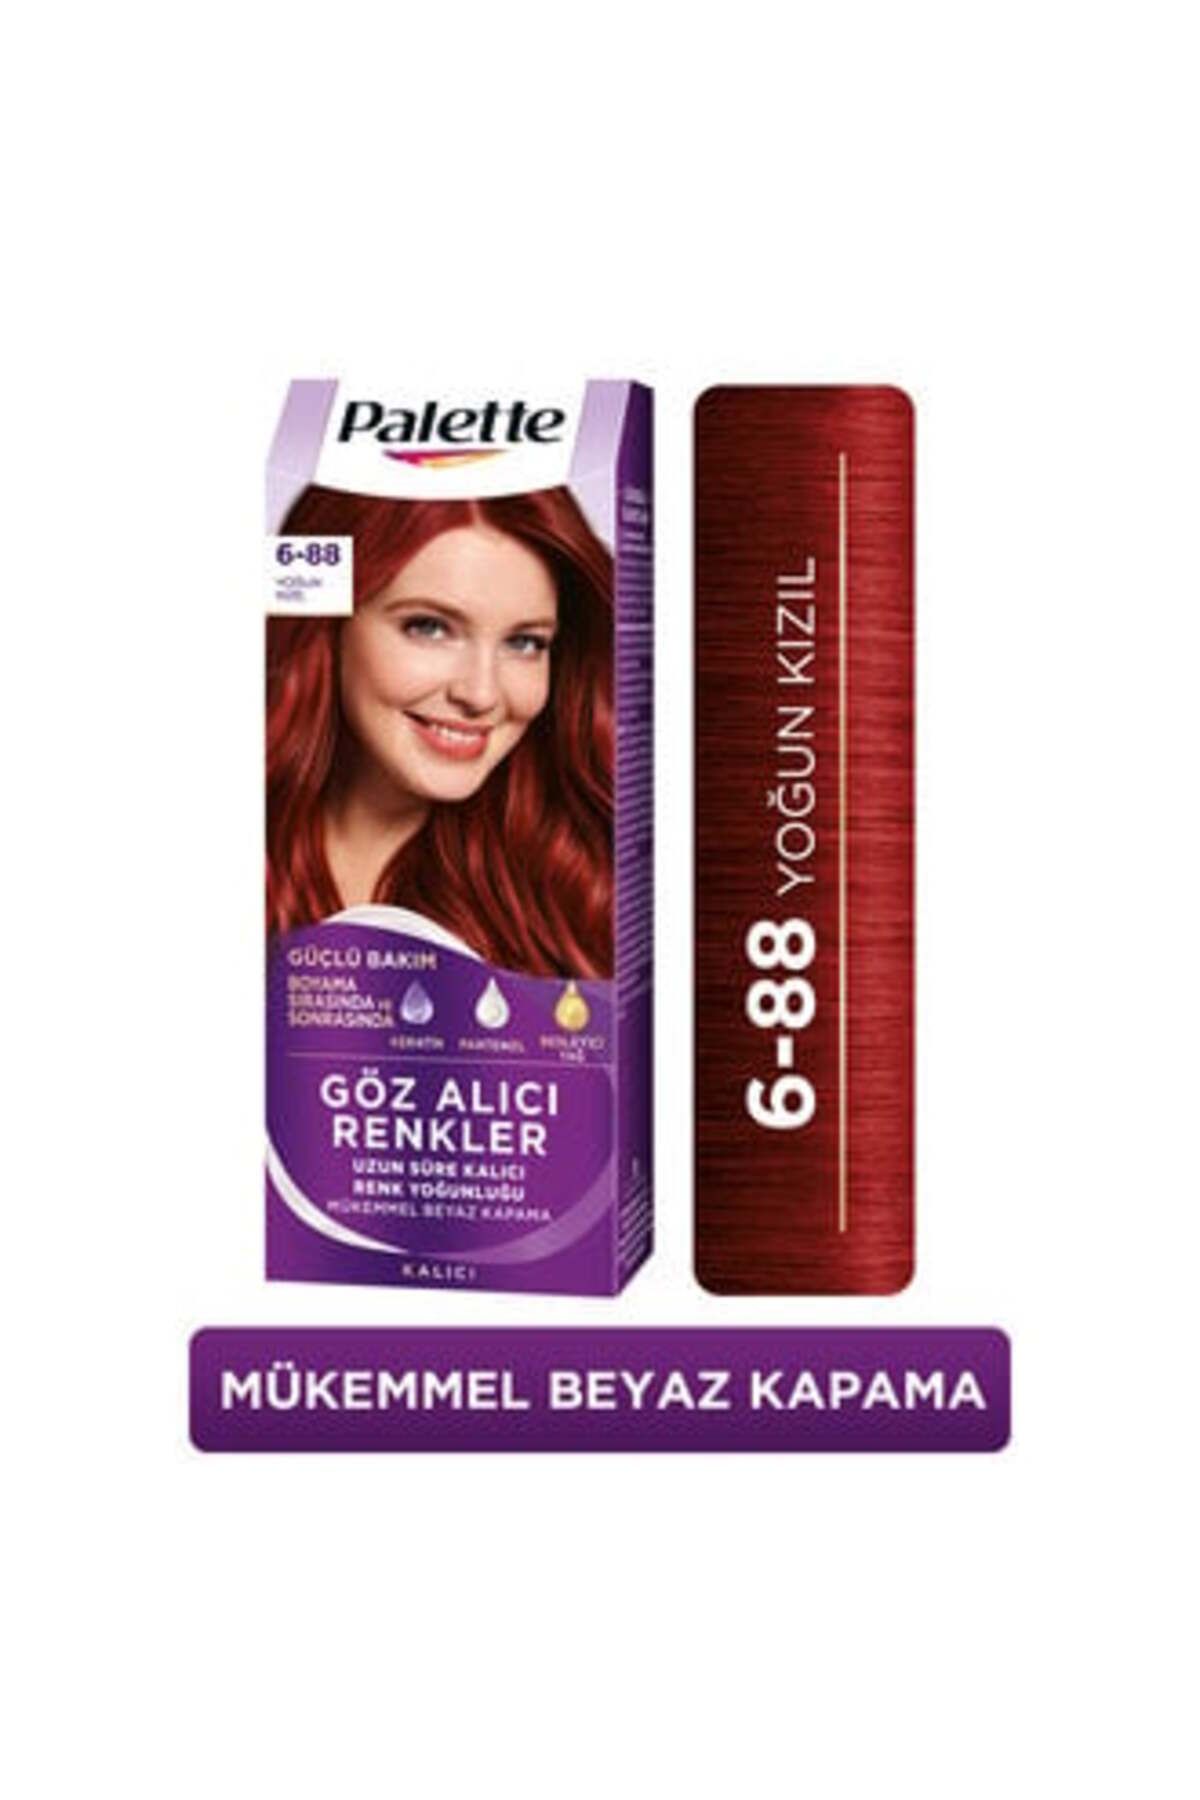 Palette Icc 6-88 Yoğun Kızıl Saç Boyası ( 1 ADET )